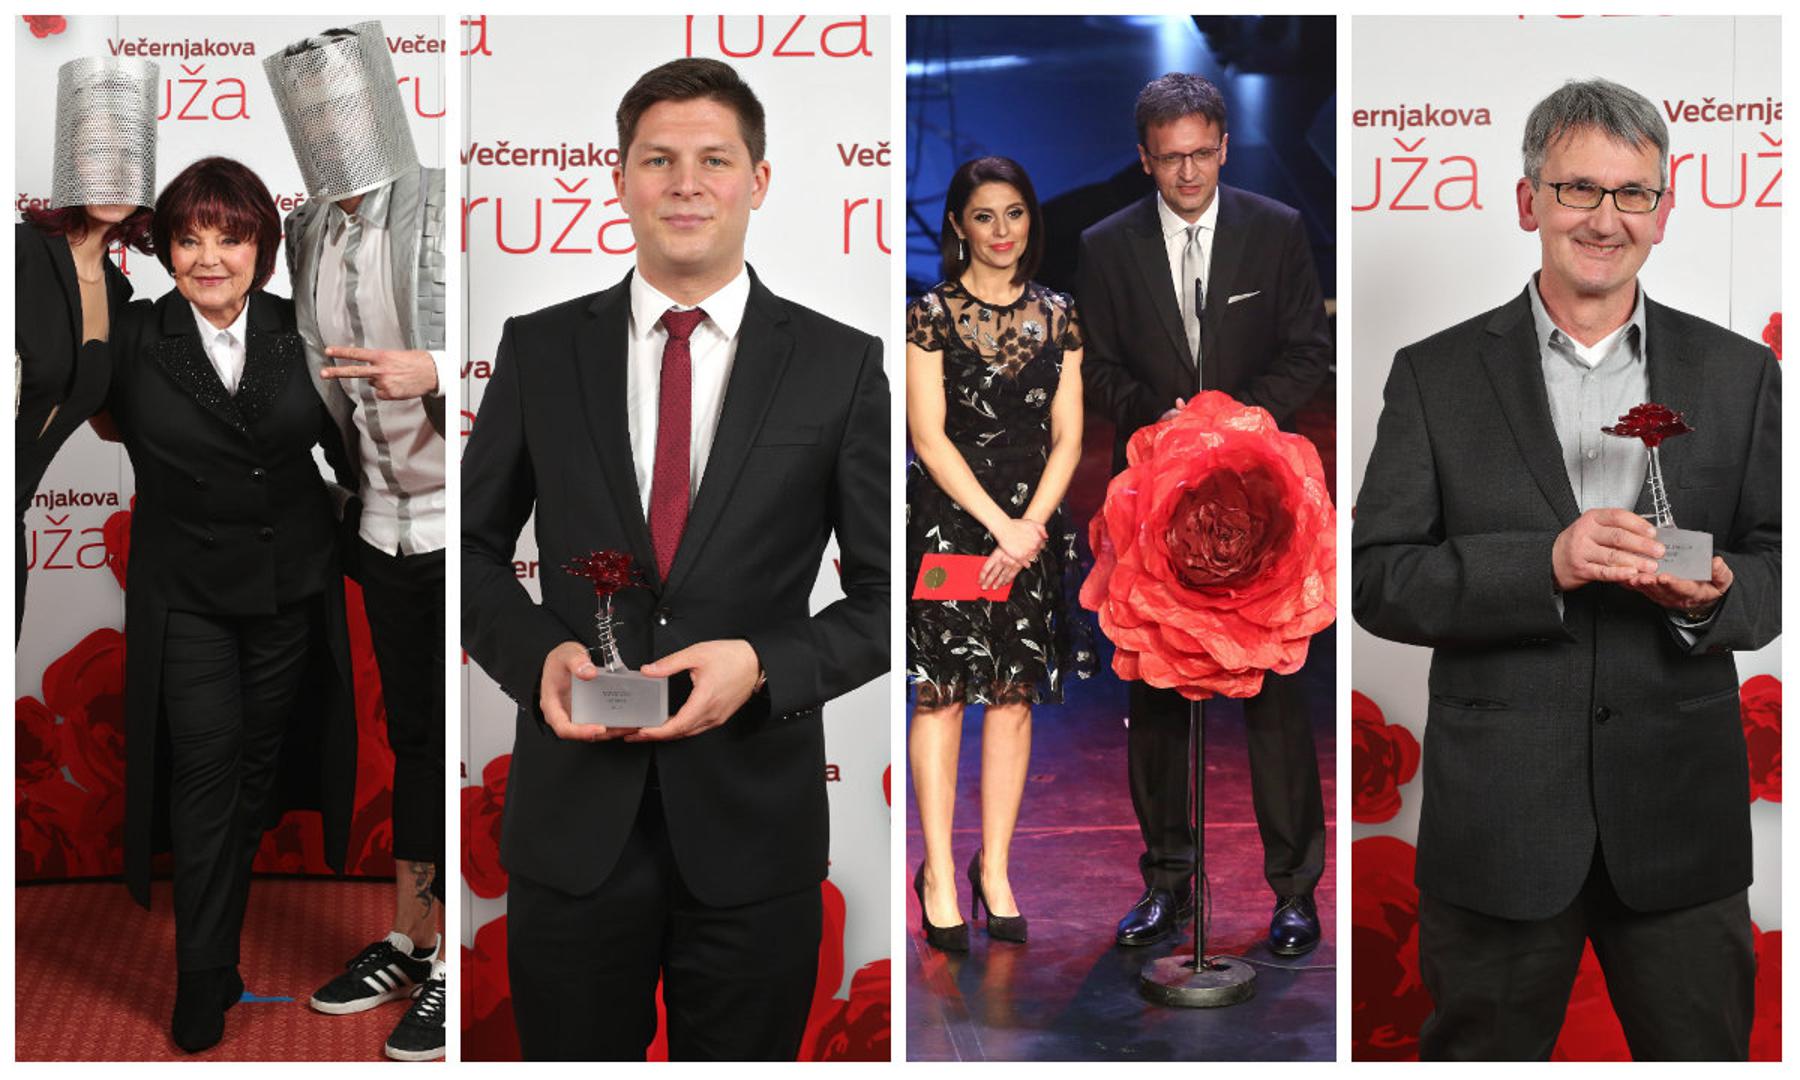 Večeras je u Hrvatskom narodnom kazalištu u Zagrebu dodijeljena prestižna nagrada Večernjakova ruža u sedam kategorija.